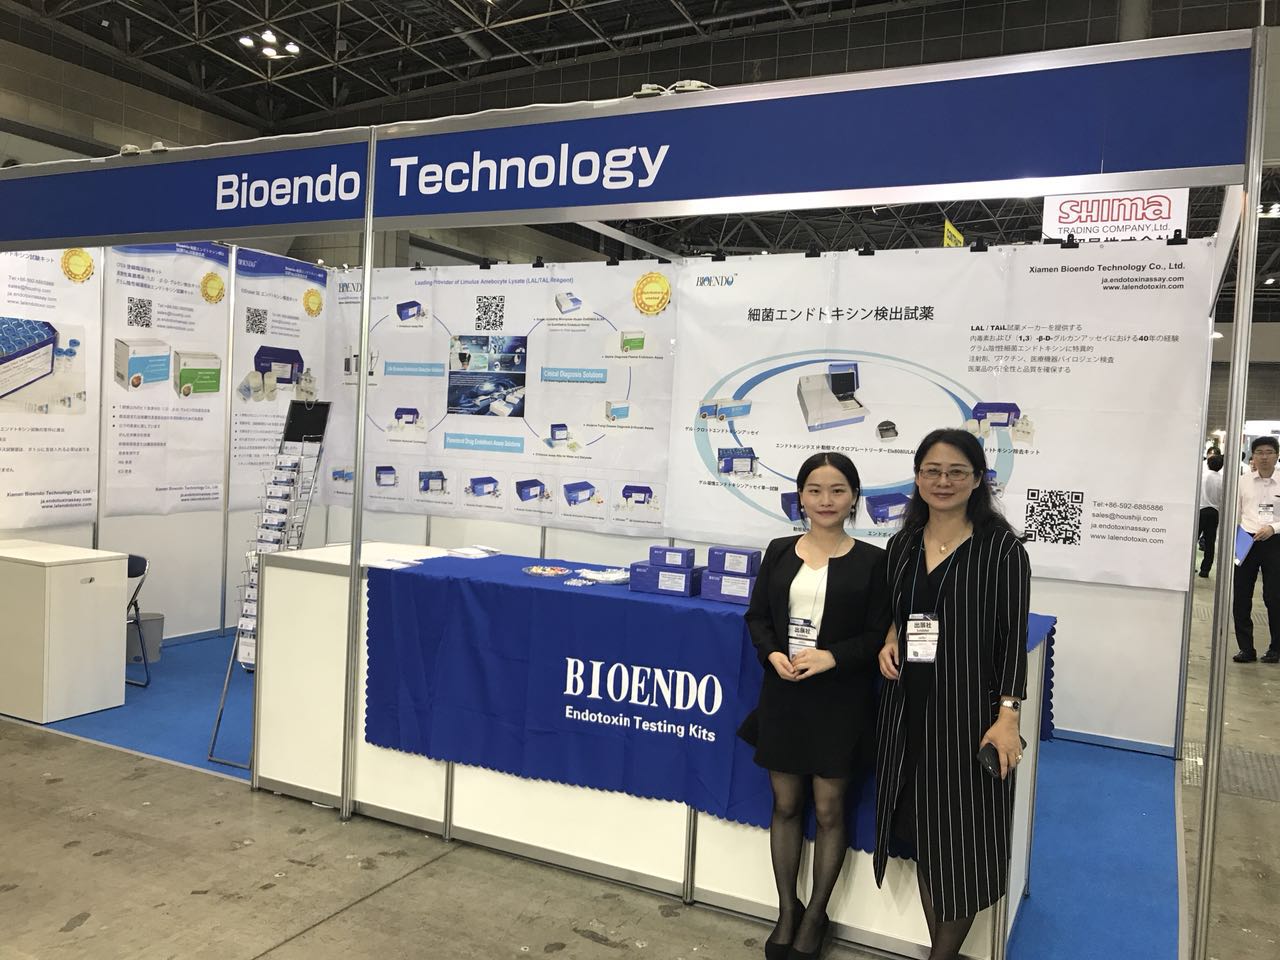 Bioendo သည် PHARMA JAPAN၊ ဇွန်လ 27-29၊ 2018 ခုနှစ်အတွင်း တက်ရောက်ခဲ့သည်